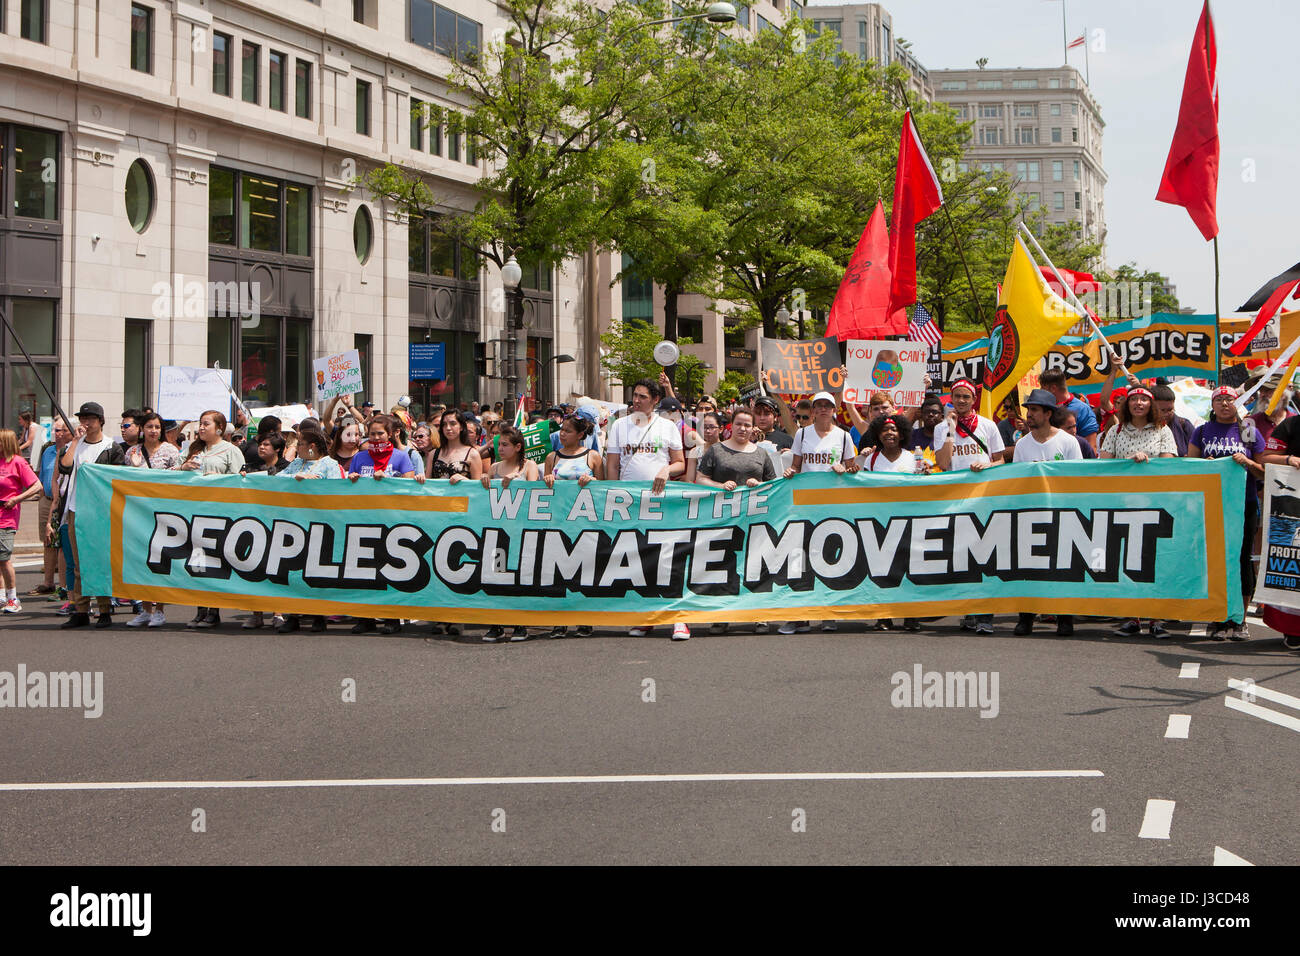 2017 persone il clima di marzo (manifestanti marciano con popoli clima circolazione banner) - Washington DC, Stati Uniti d'America Foto Stock